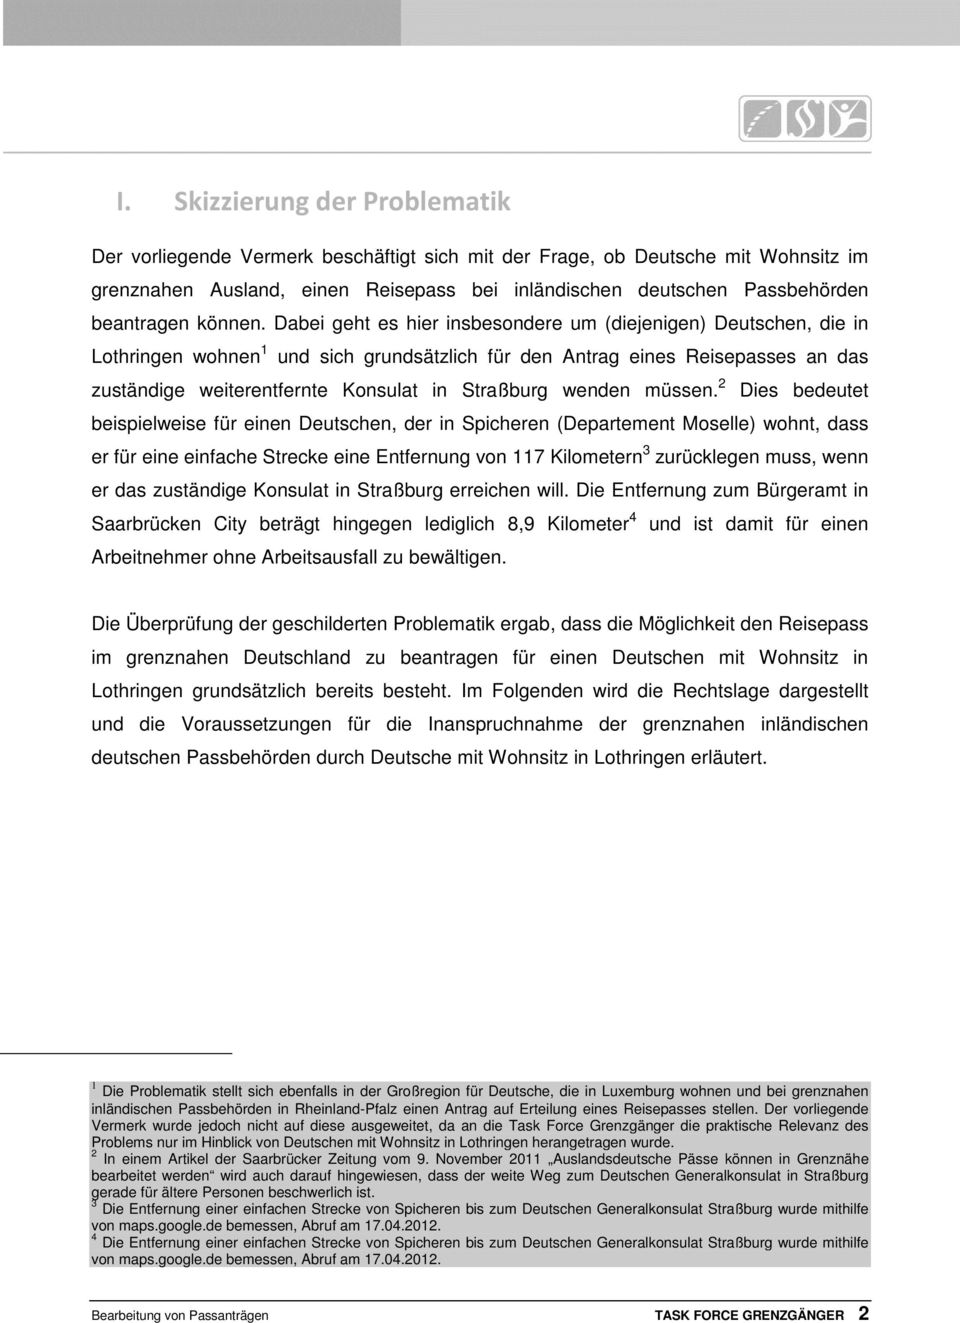 Dabei geht es hier insbesondere um (diejenigen) Deutschen, die in Lothringen wohnen 1 und sich grundsätzlich für den Antrag eines Reisepasses an das zuständige weiterentfernte Konsulat in Straßburg